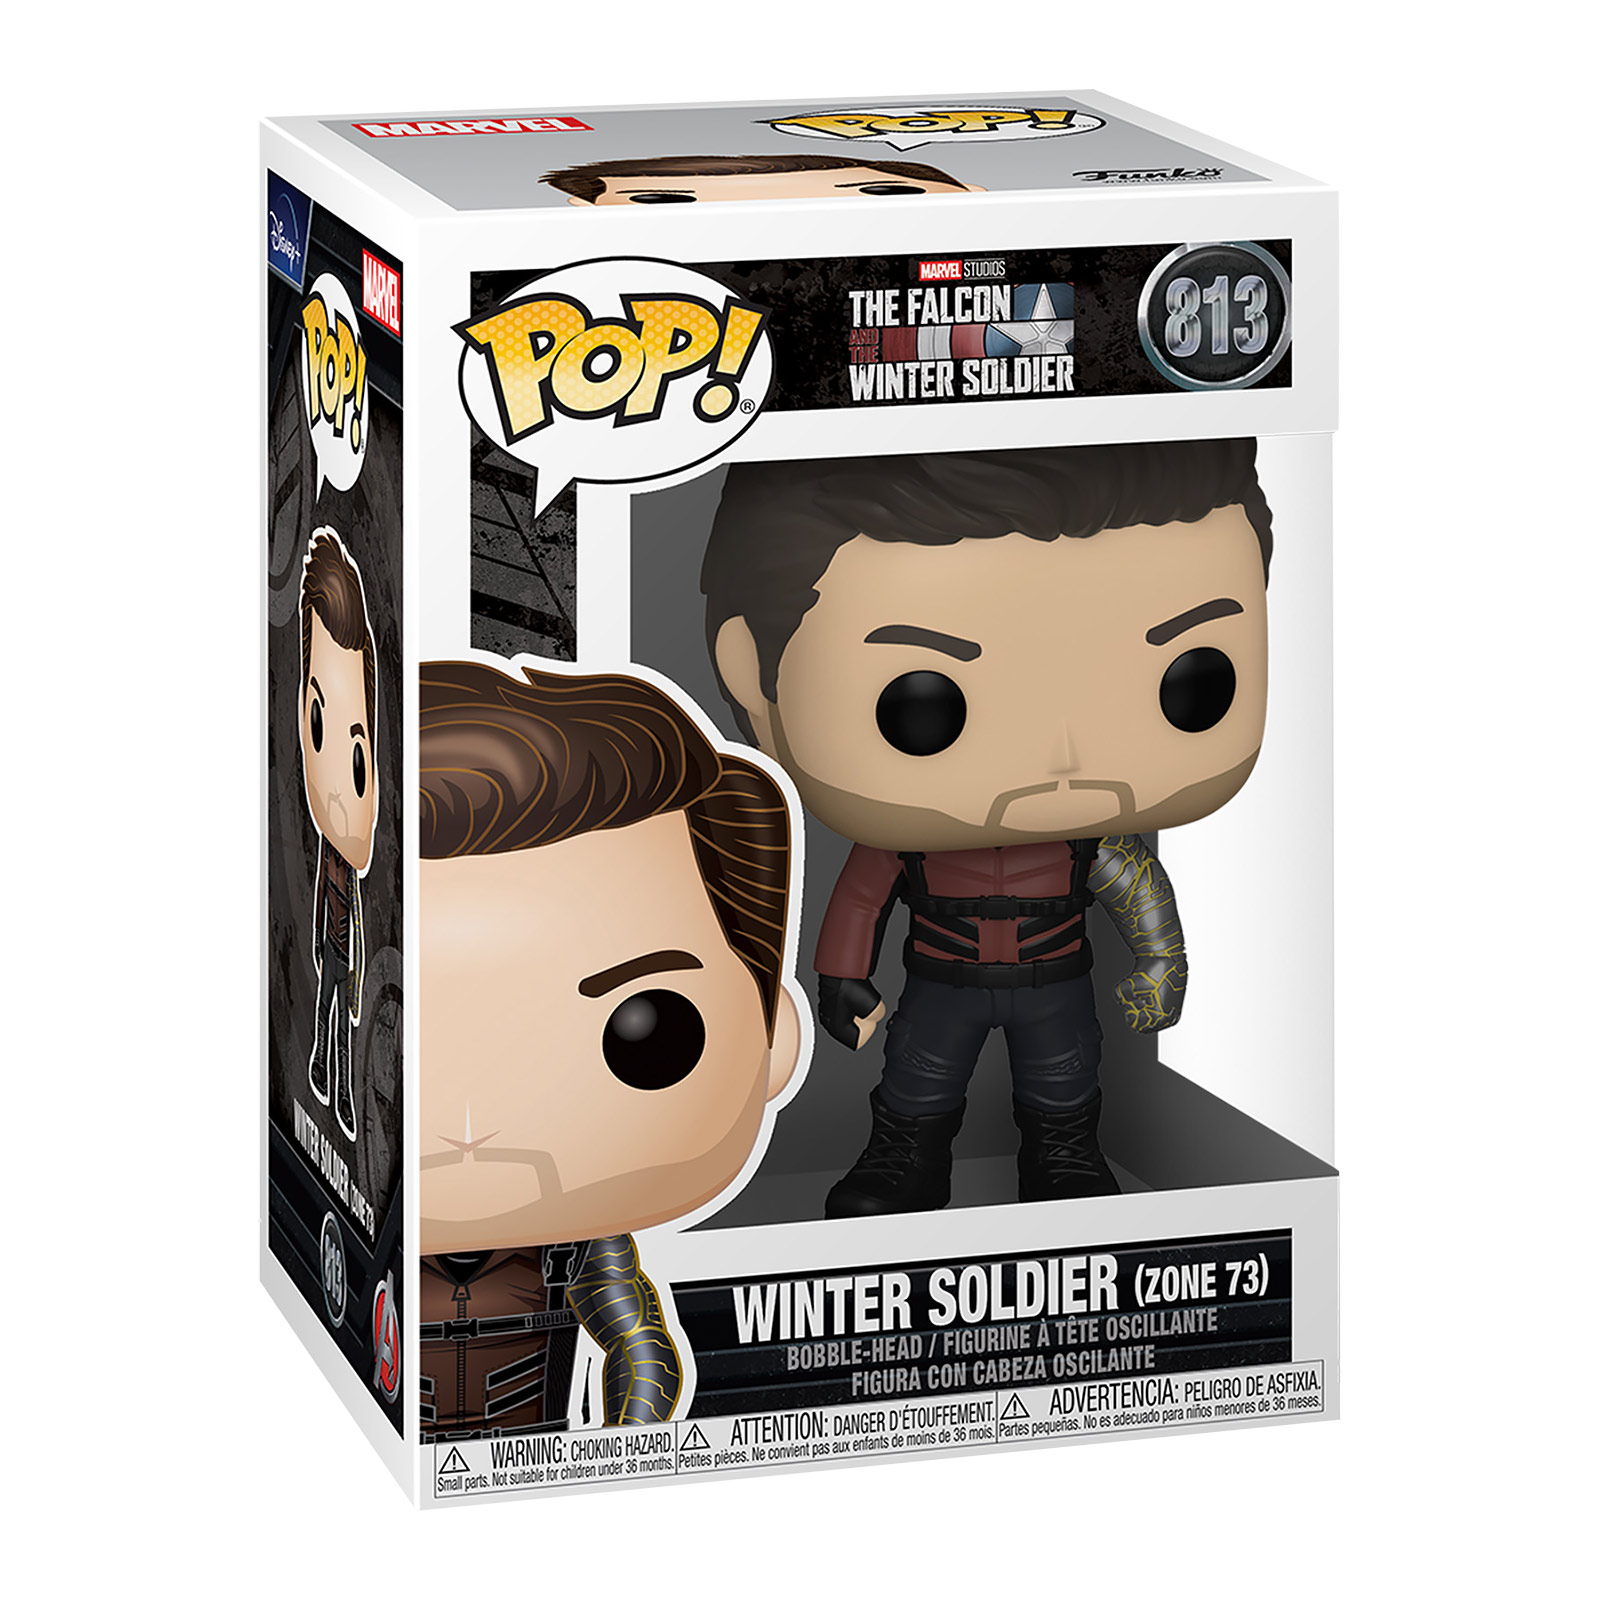 Winter Soldier Zone 73 Funko Pop Figur - The Falcon and the Winter Soldier